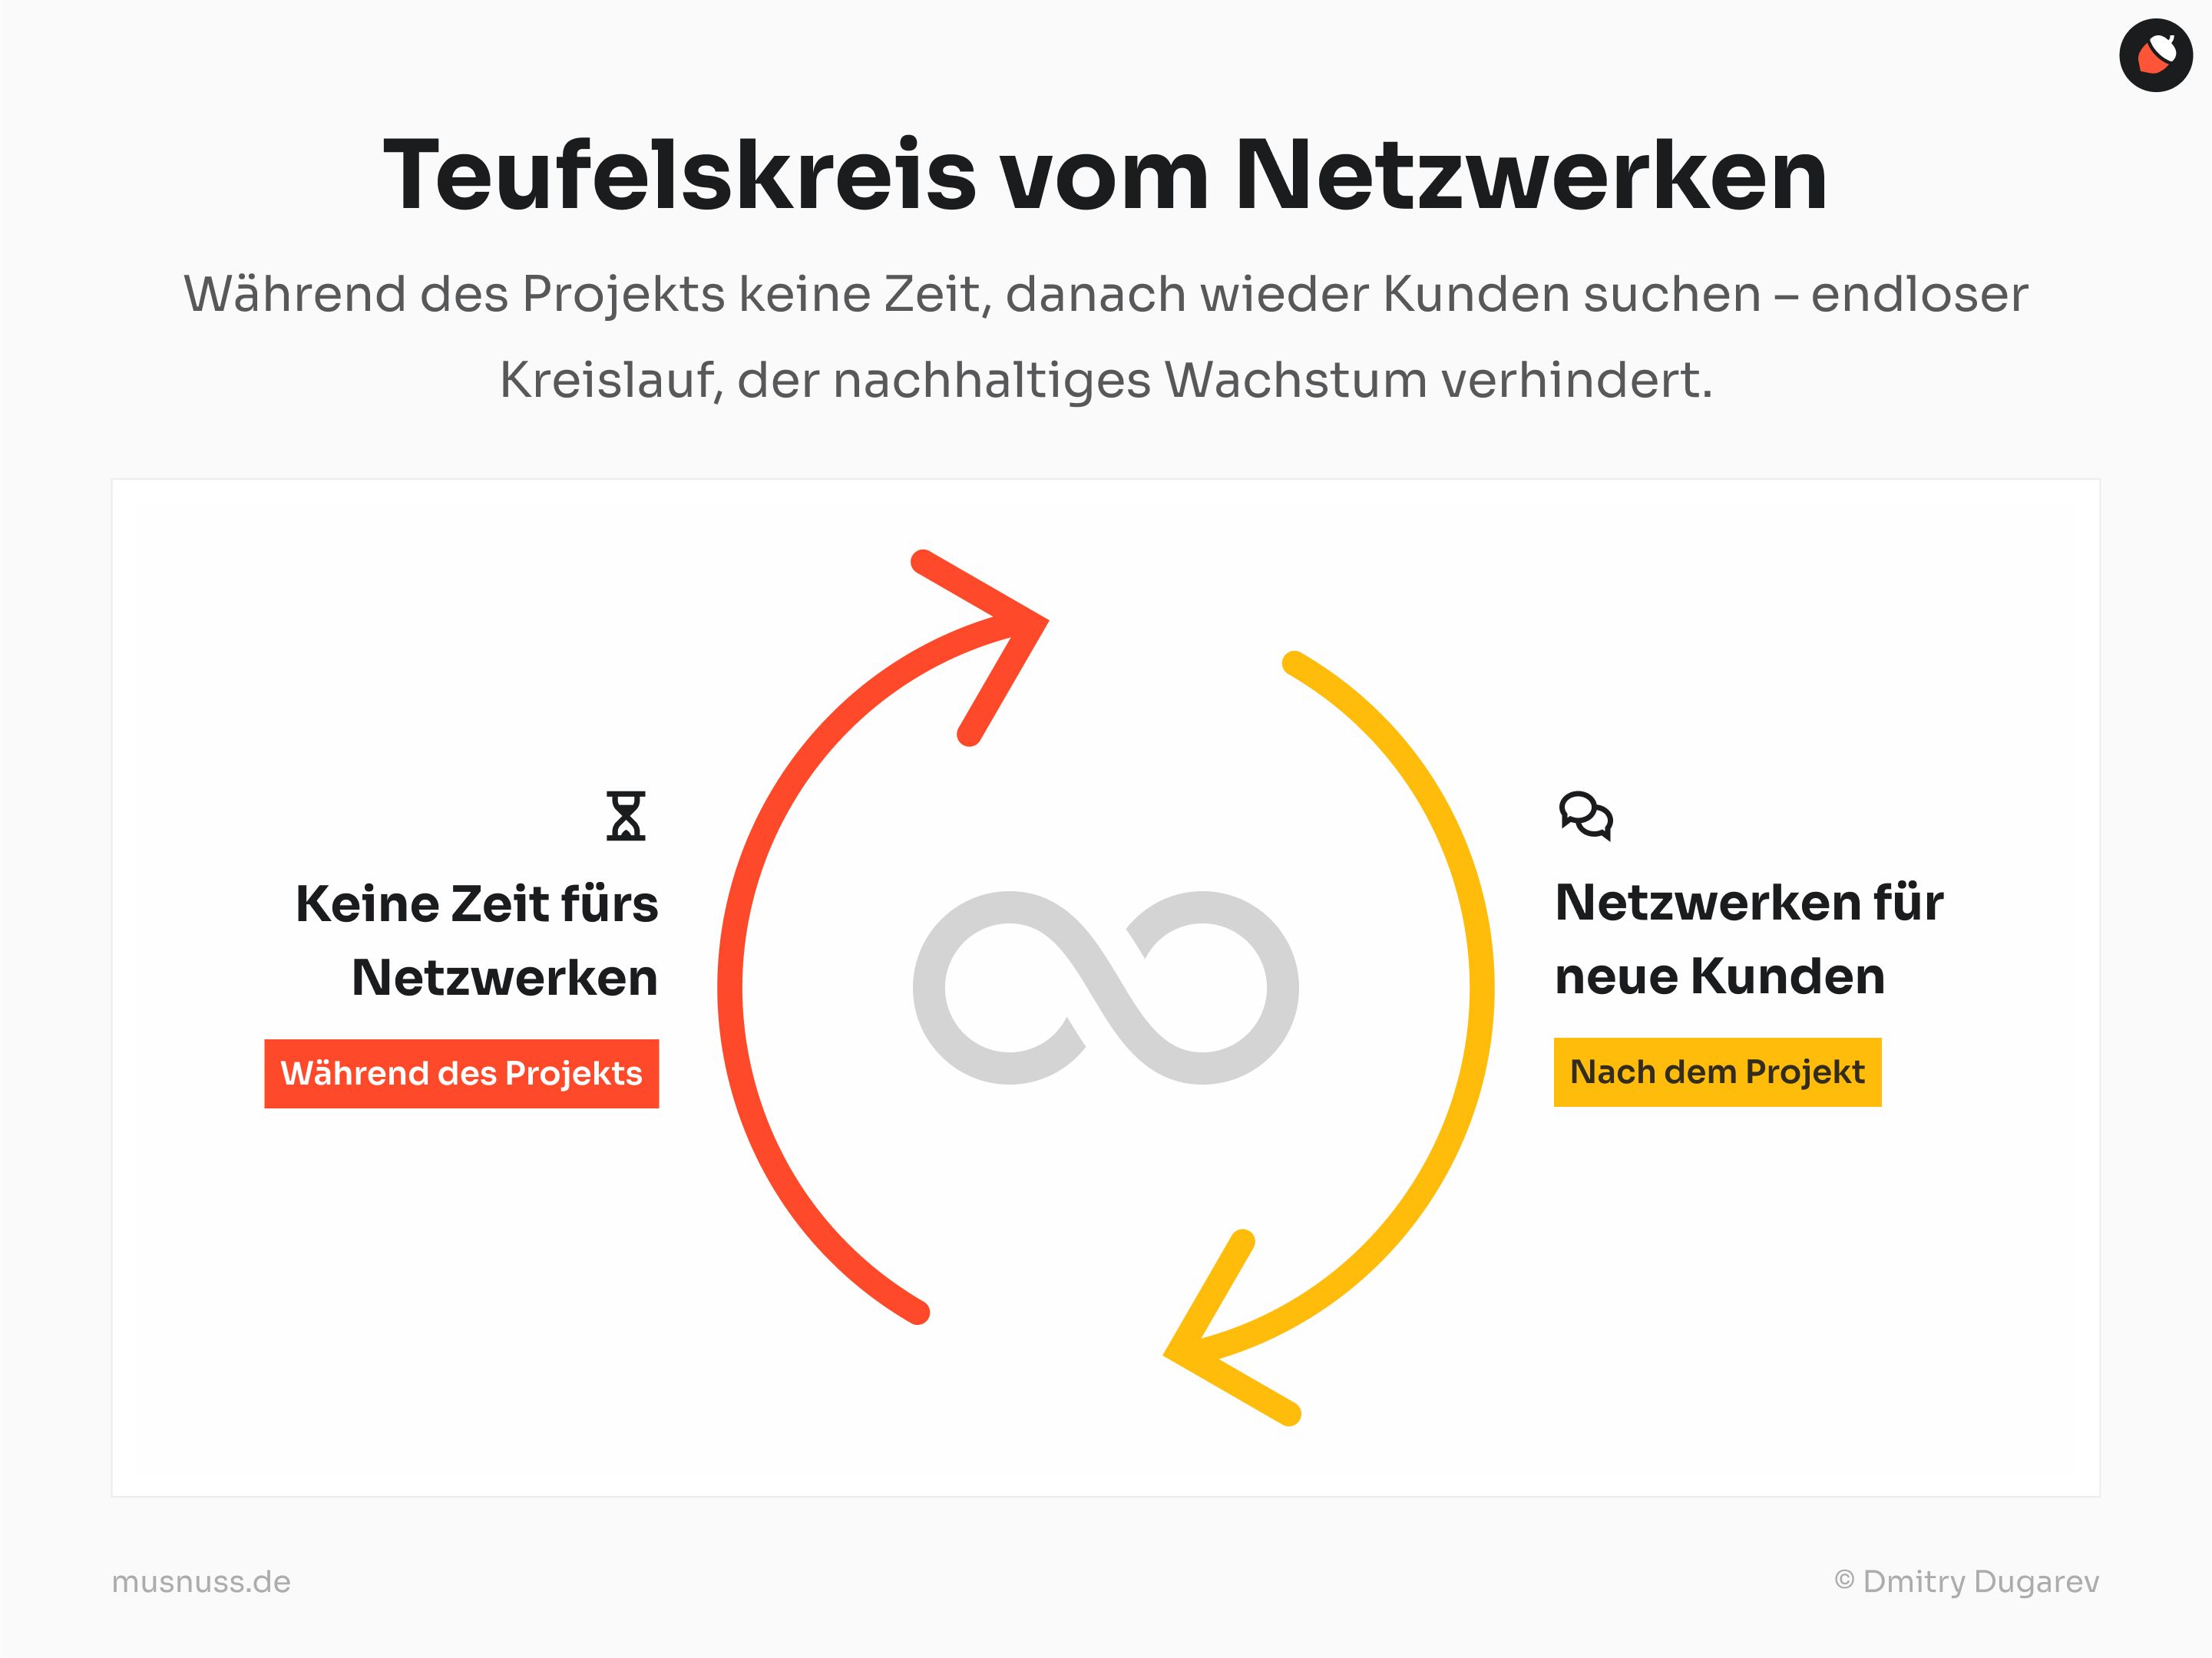 Diese Grafik zeigt den "Teufelskreis vom Netzwerken". Links im roten Kreis steht "Keine Zeit fürs Netzwerken" mit einer Sanduhr und dem Hinweis "Während des Projekts". Rechts im gelben Kreis steht "Netzwerken für neue Kunden" mit einem Sprechblasen-Symbol und dem Hinweis "Nach dem Projekt". In der Mitte der Grafik ist ein Unendlichkeitszeichen, das den endlosen Kreislauf darstellt. Die Pfeile zwischen den Kreisen verdeutlichen den wiederkehrenden Zyklus, der nachhaltiges Wachstum verhindert.